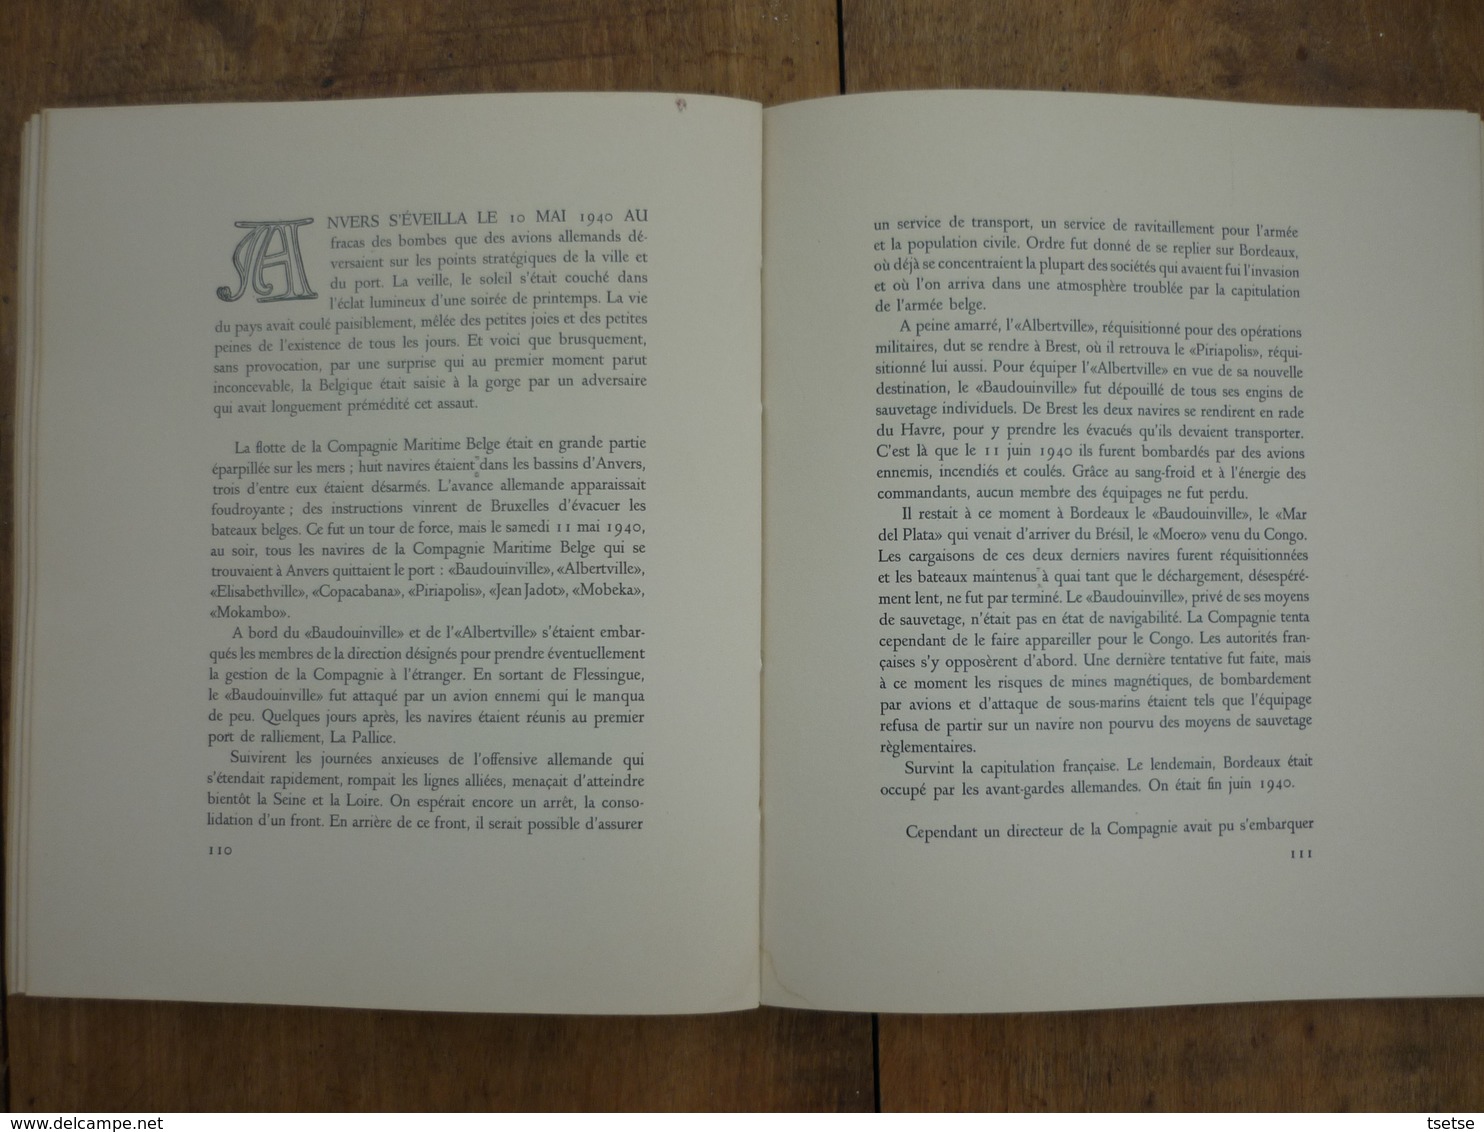 Anvers - Superbe livre sur l'histoire de la Compagnie Maritime Belge ( LLoyd Royal ) 1895-1945 ( voir scan )